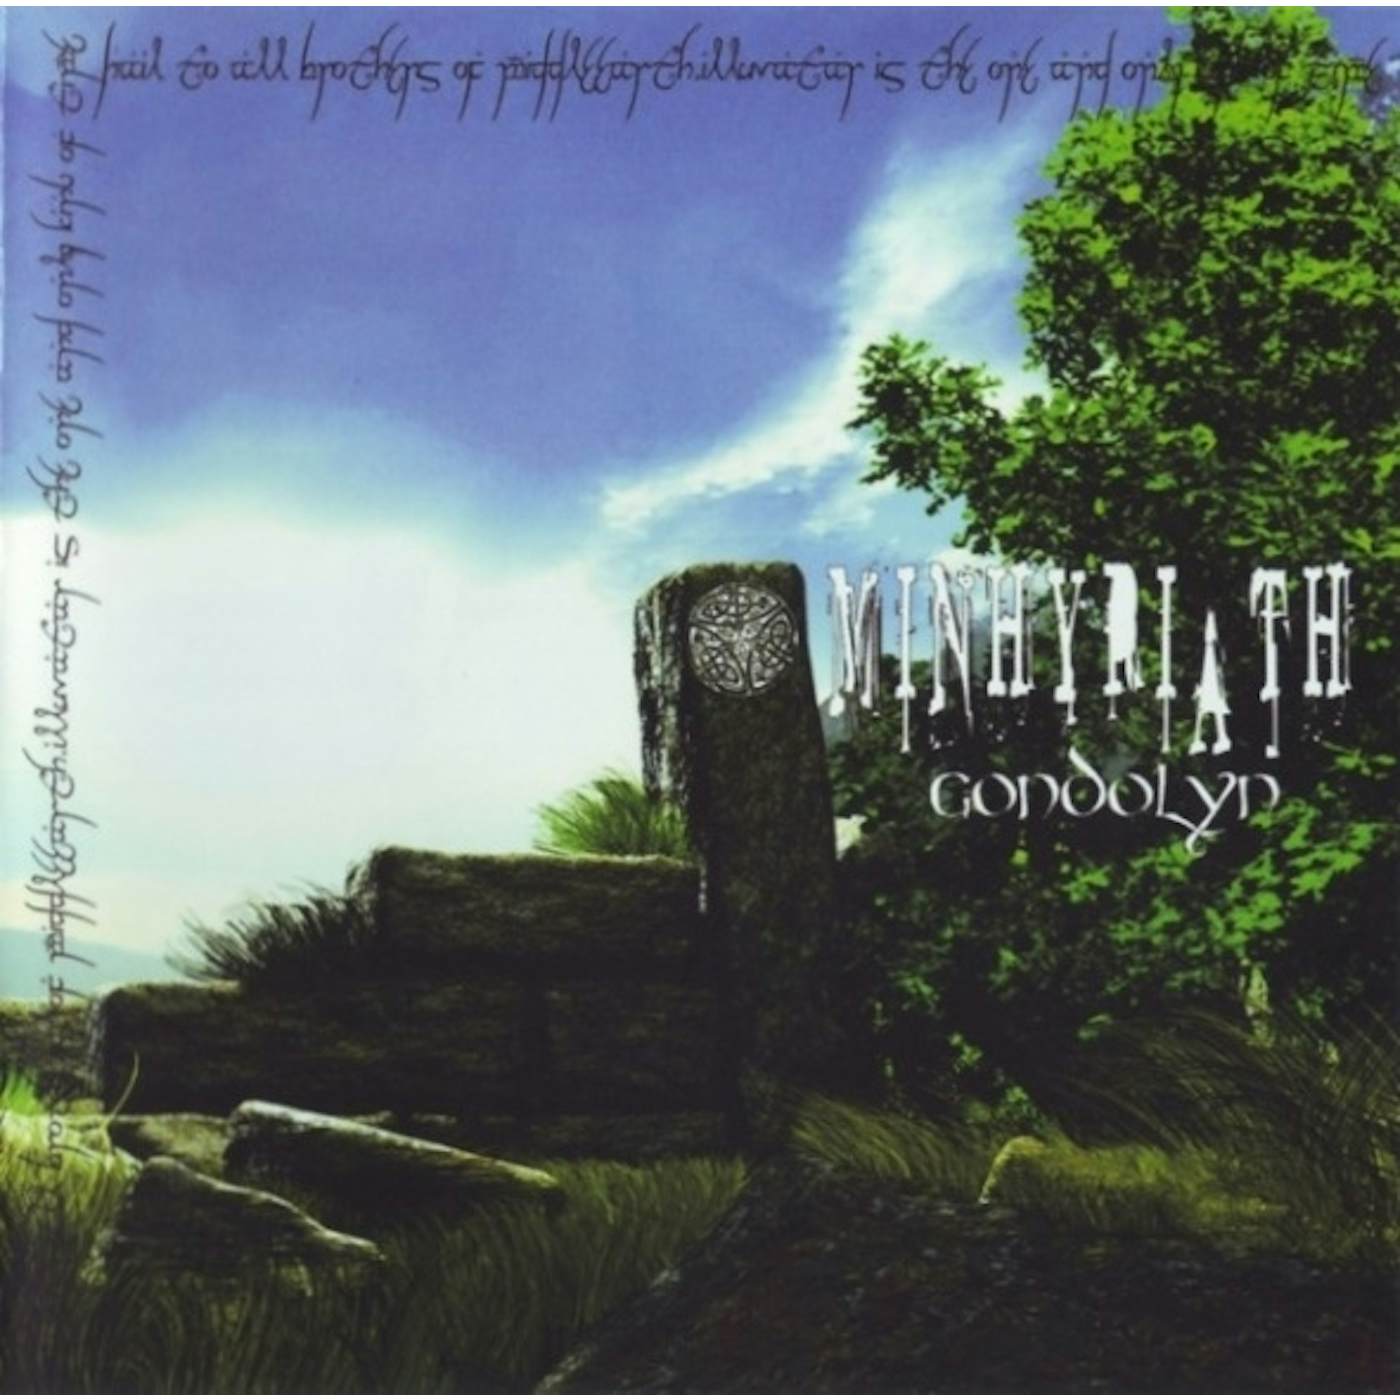 Minhyriath GONDOLYN Vinyl Record - Portugal Release